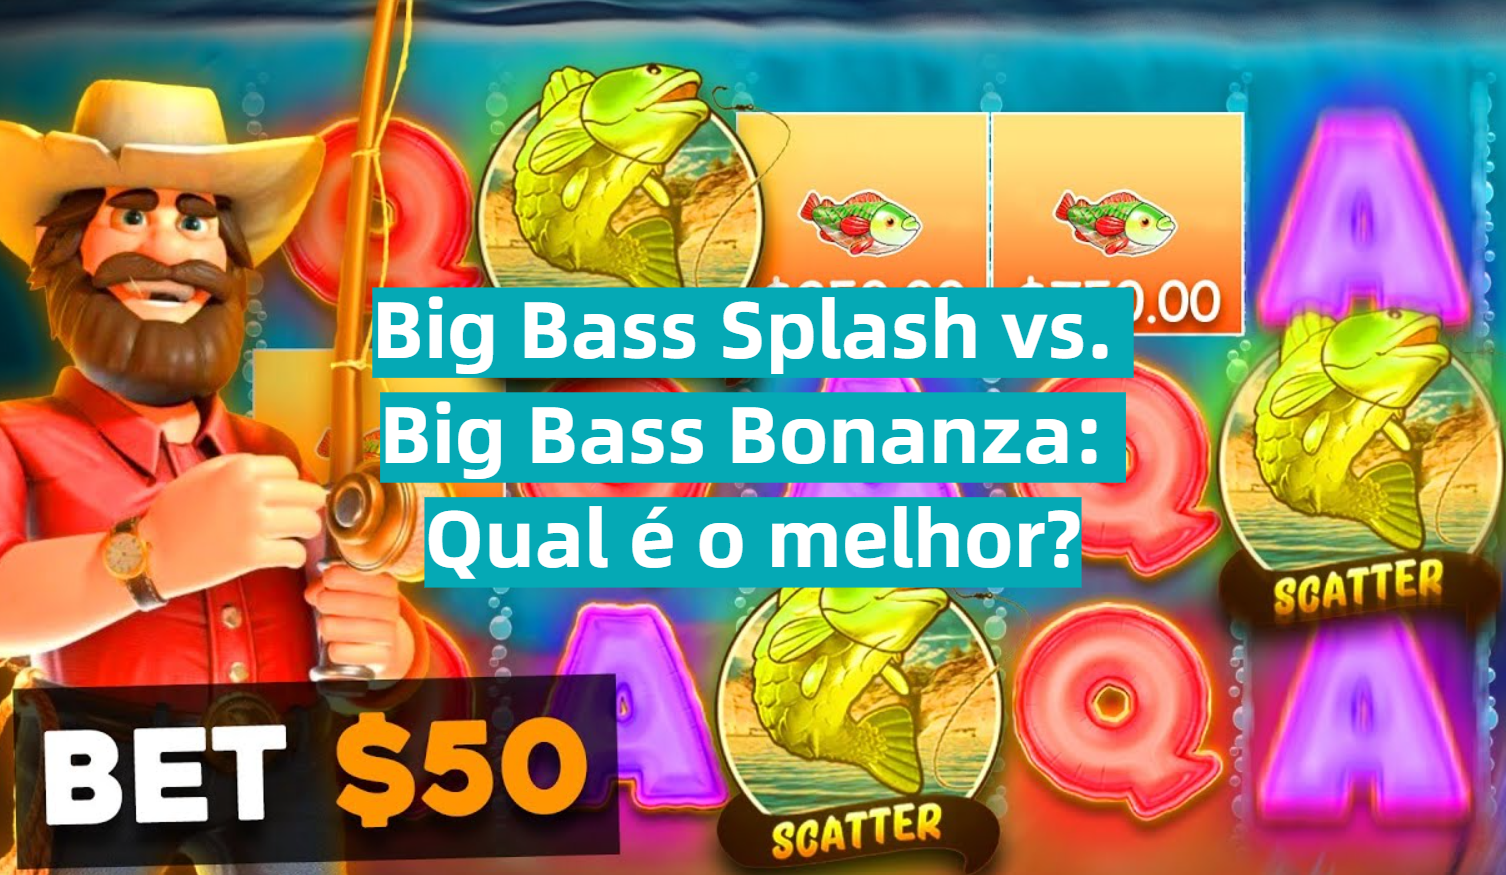 Big Bass Splash vs. Big Bass Bonanza: Qual é o melhor?